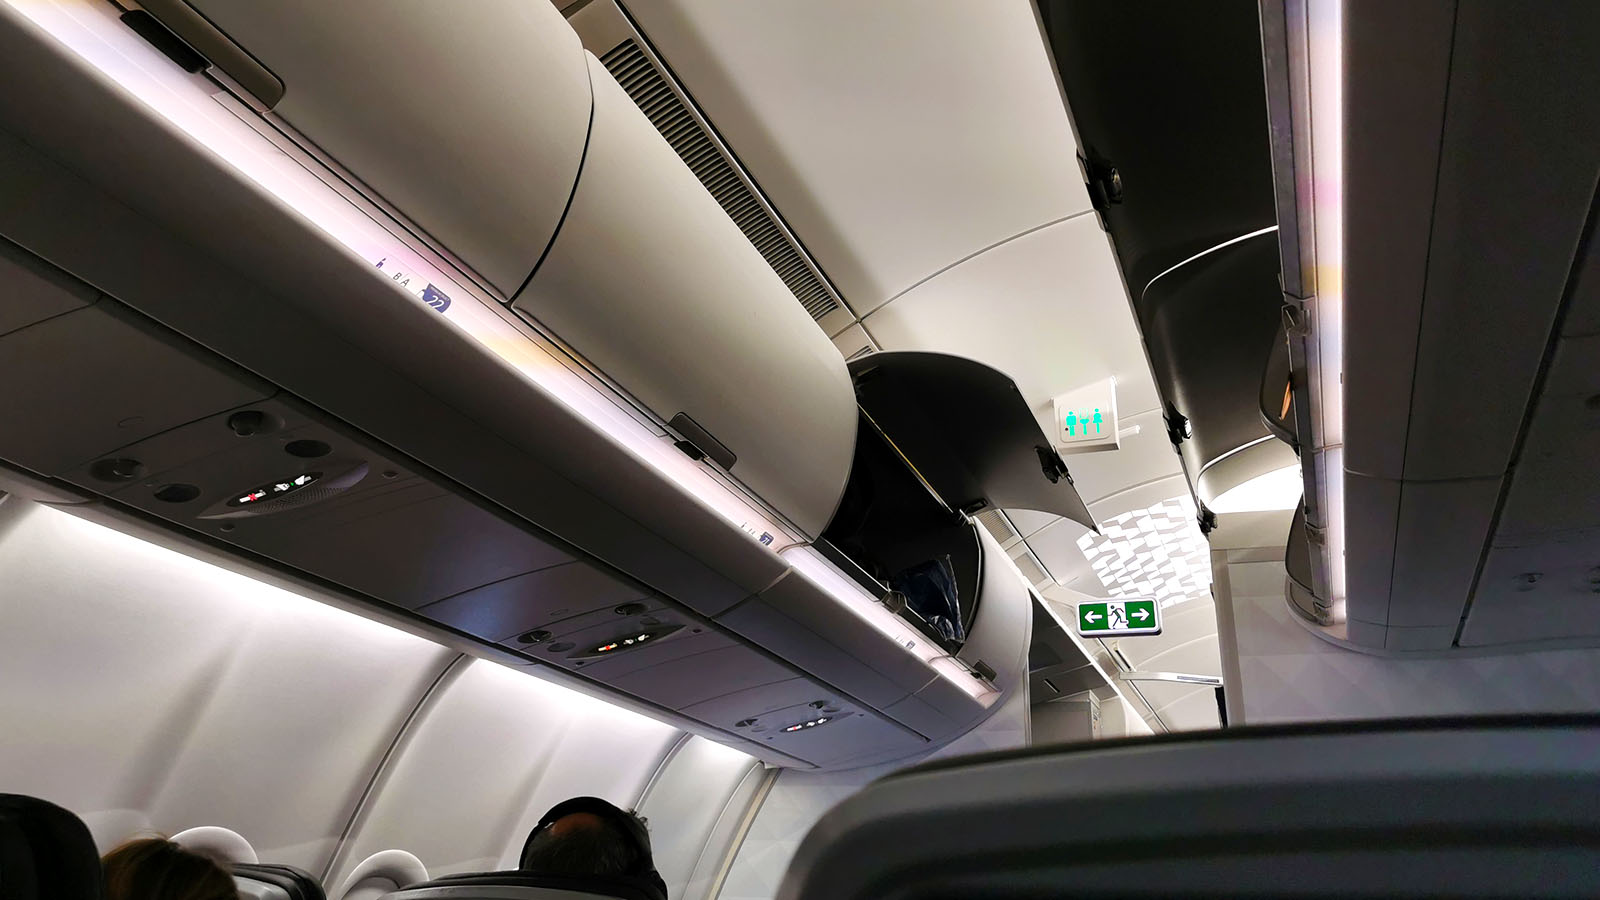 Storage bins in Delta A330-900neo Comfort+